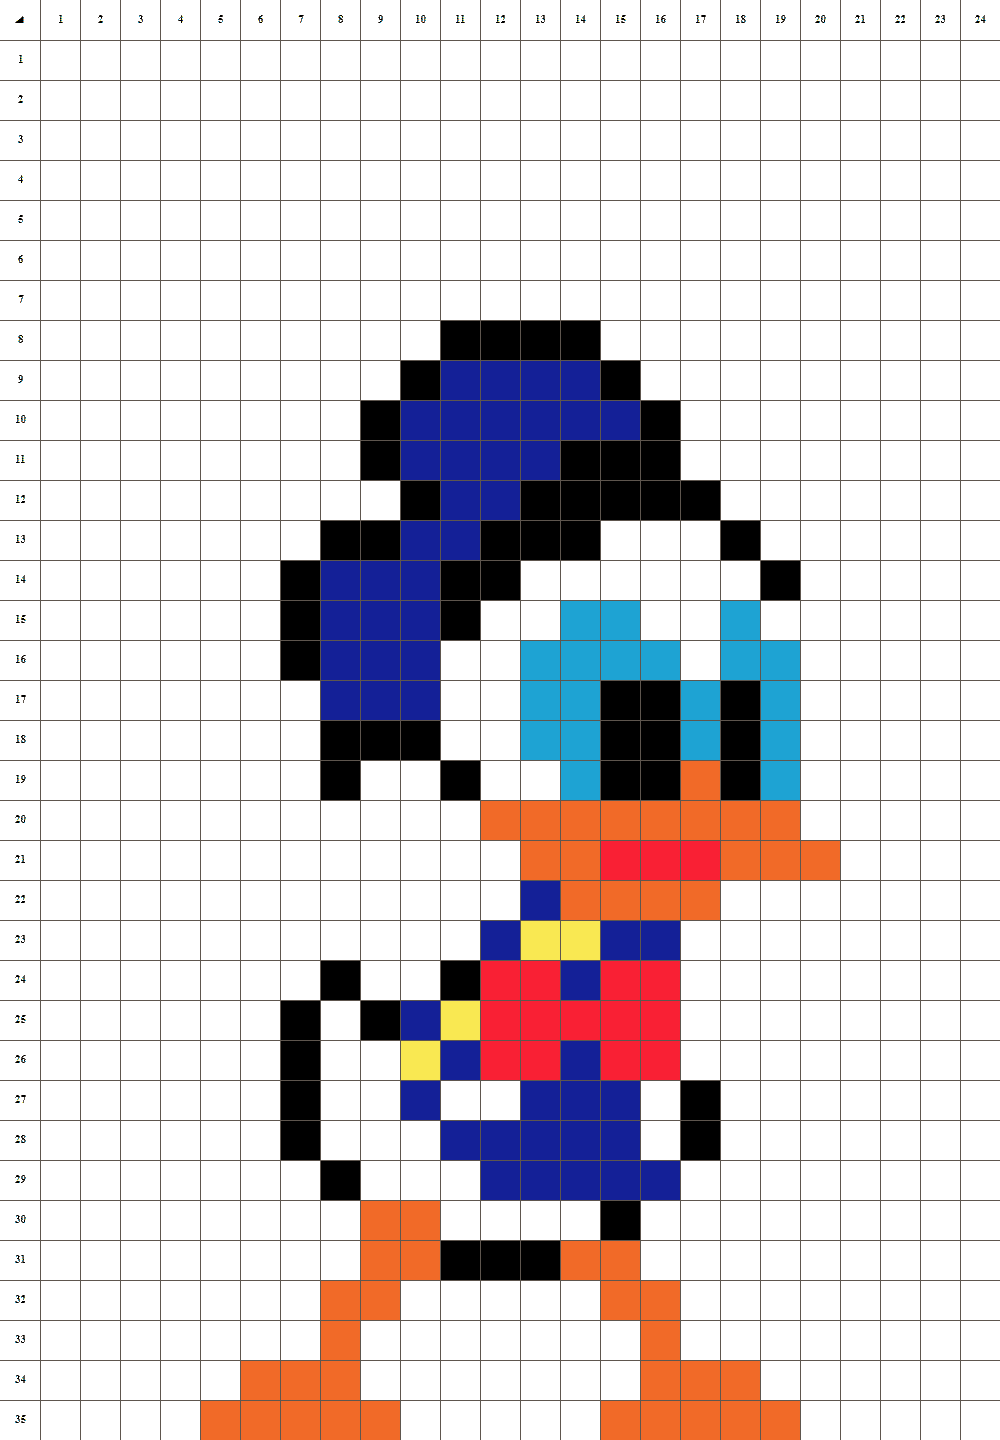 Donald pixel art